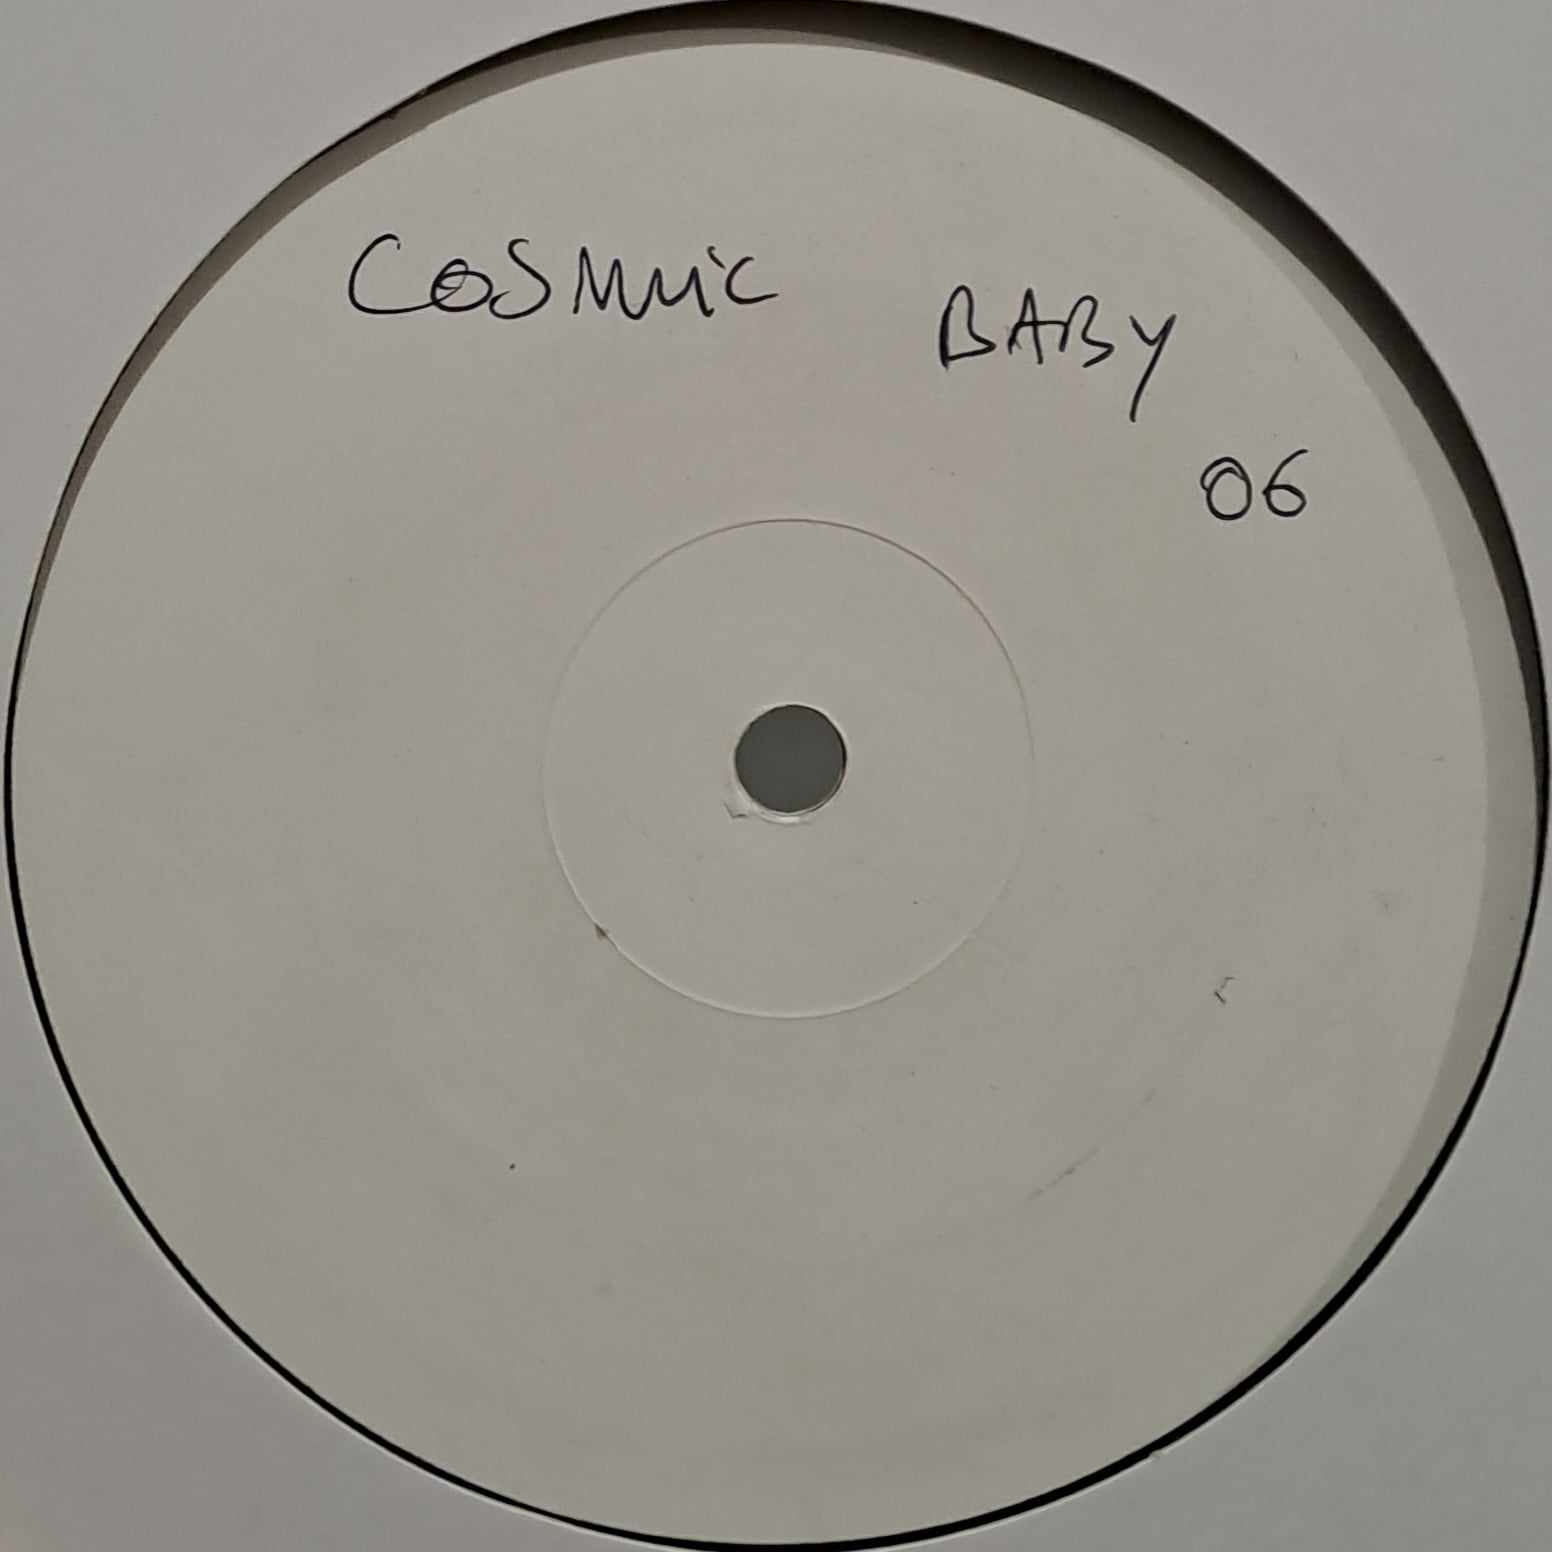 Cosmic Baby 06 (white label) - vinyle freetekno